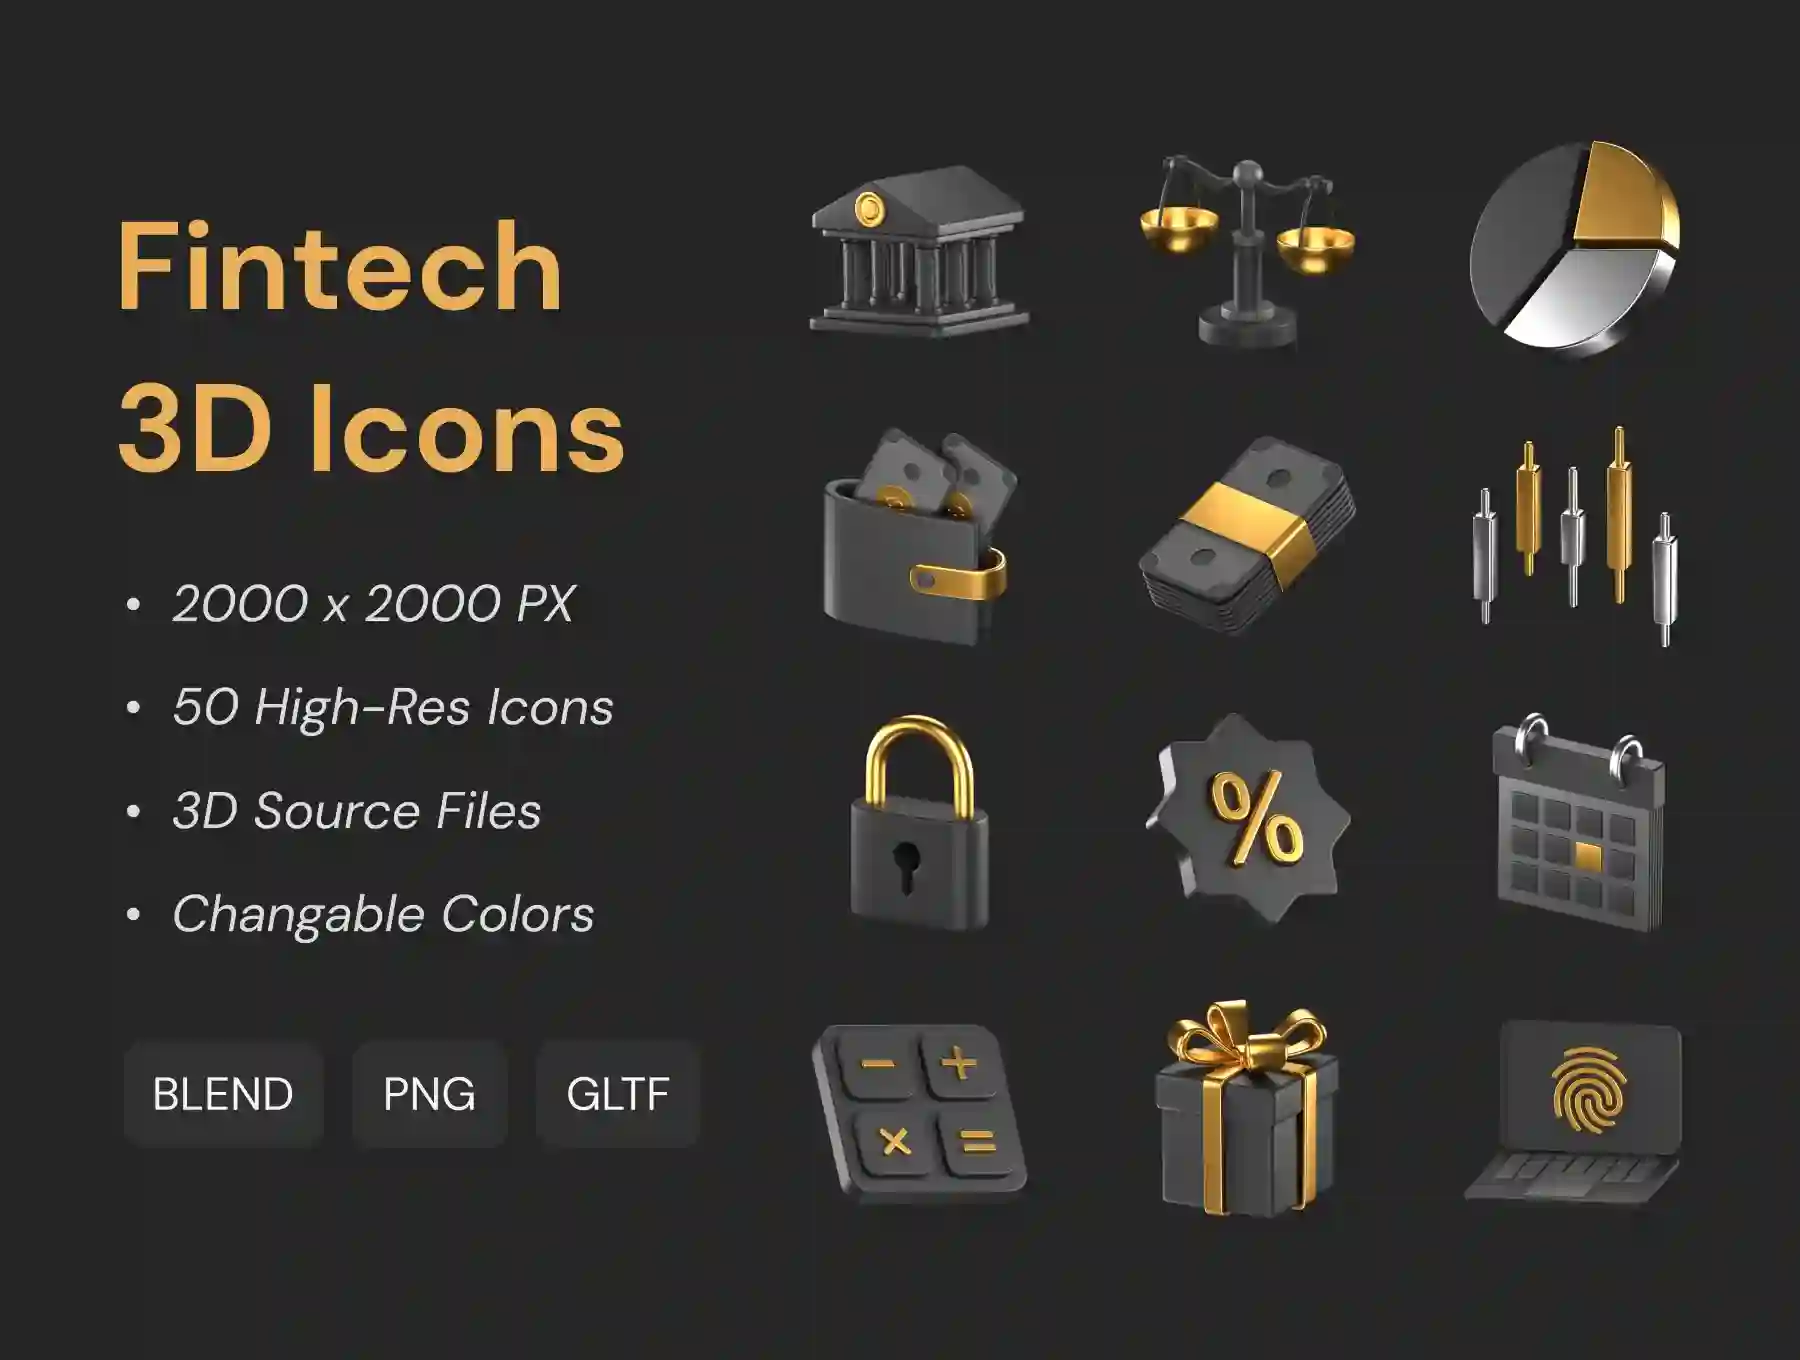 Fintech 3D Icons